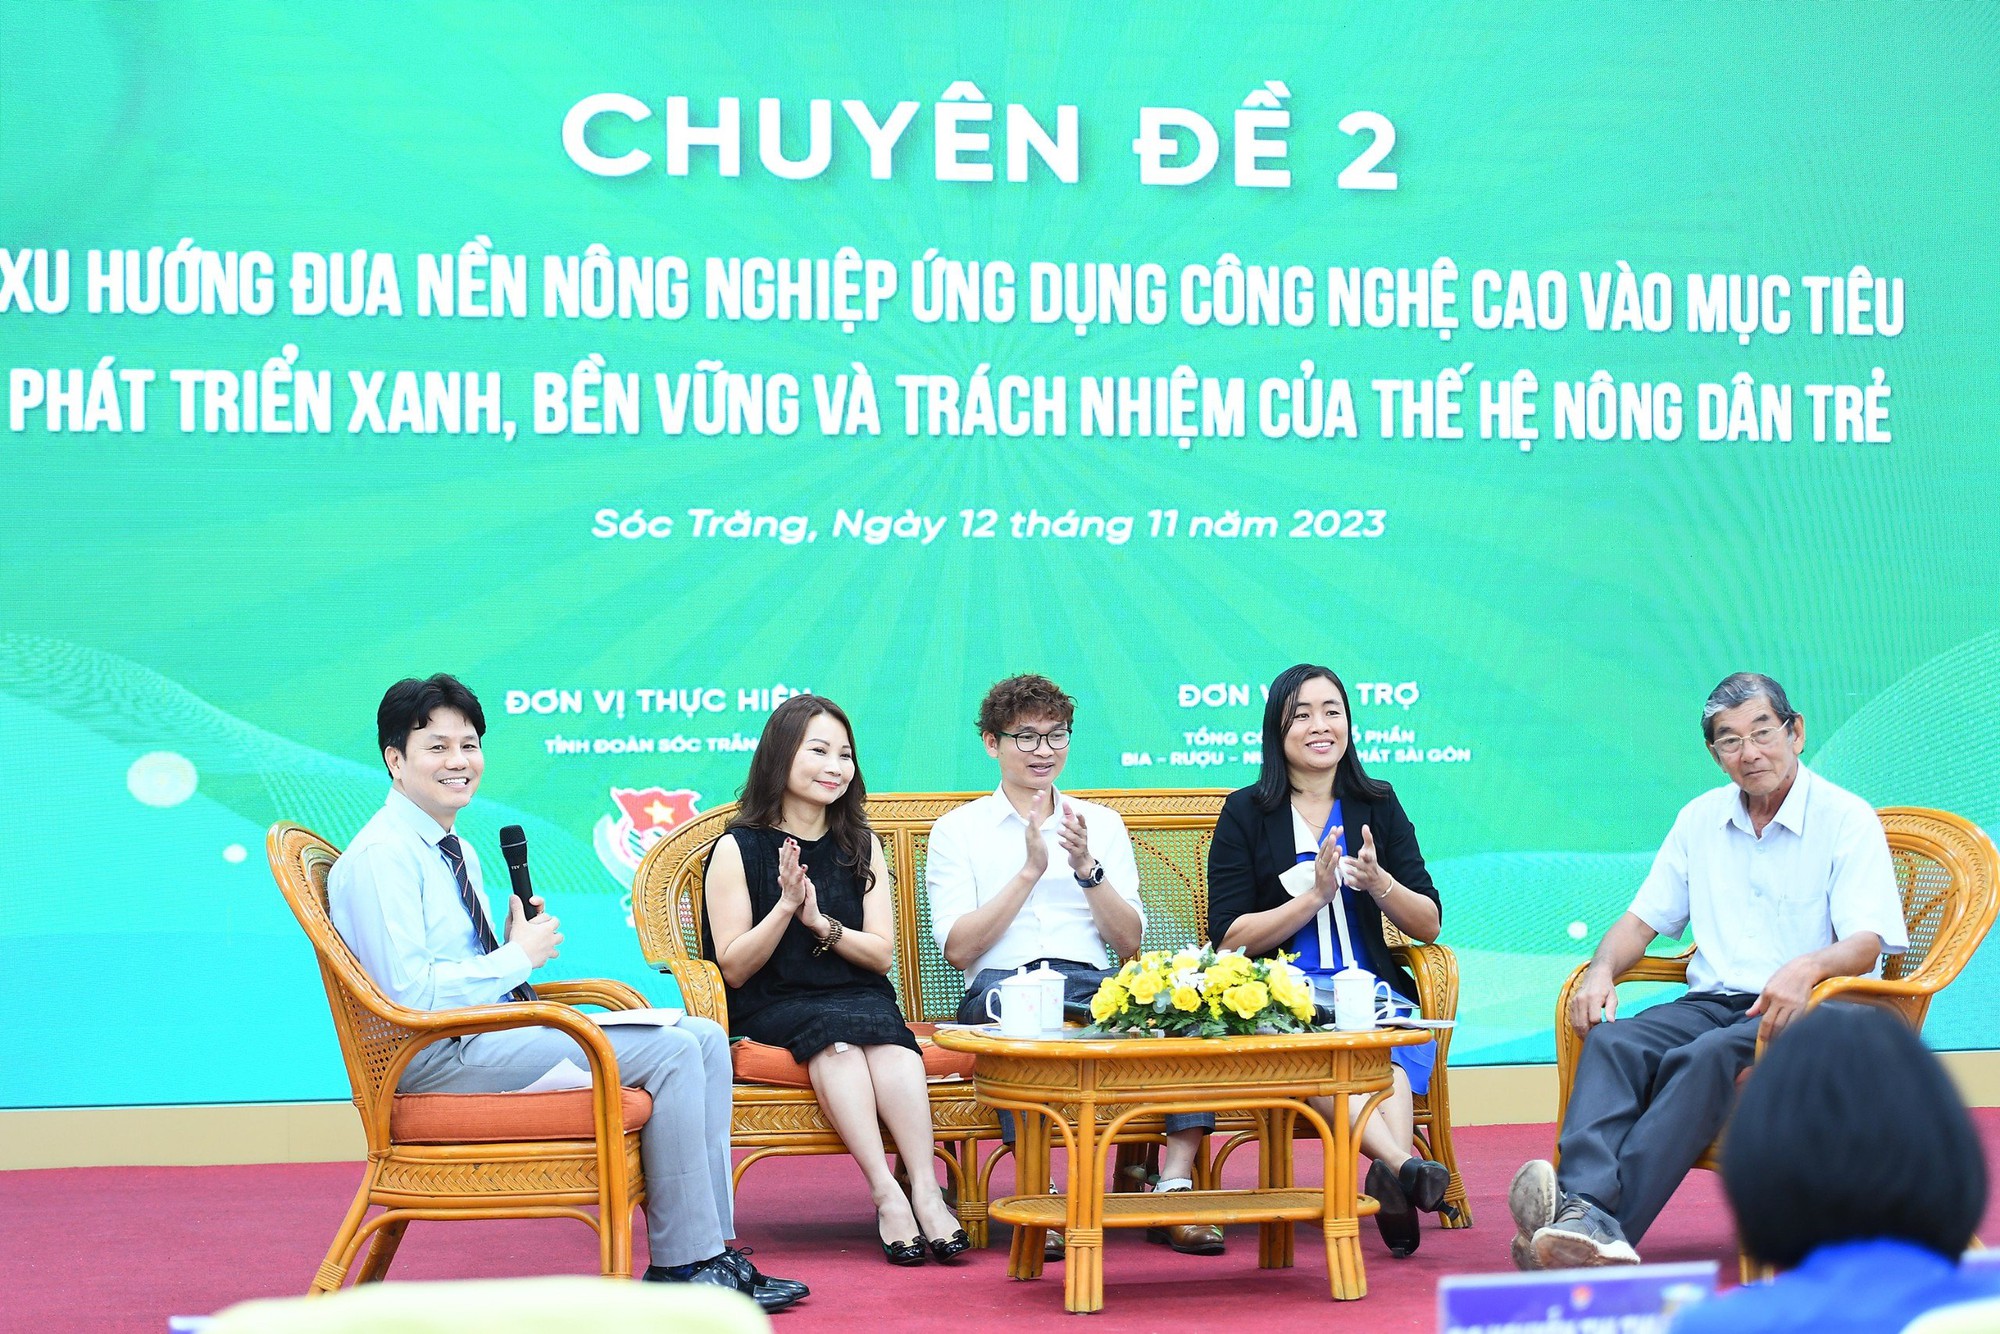 'Cha đẻ' gạo ngon nhất thế giới ST25 Hồ Quang Cua bàn chuyện ứng dụng nông nghiệp công nghệ cao với thanh niên - Ảnh 1.